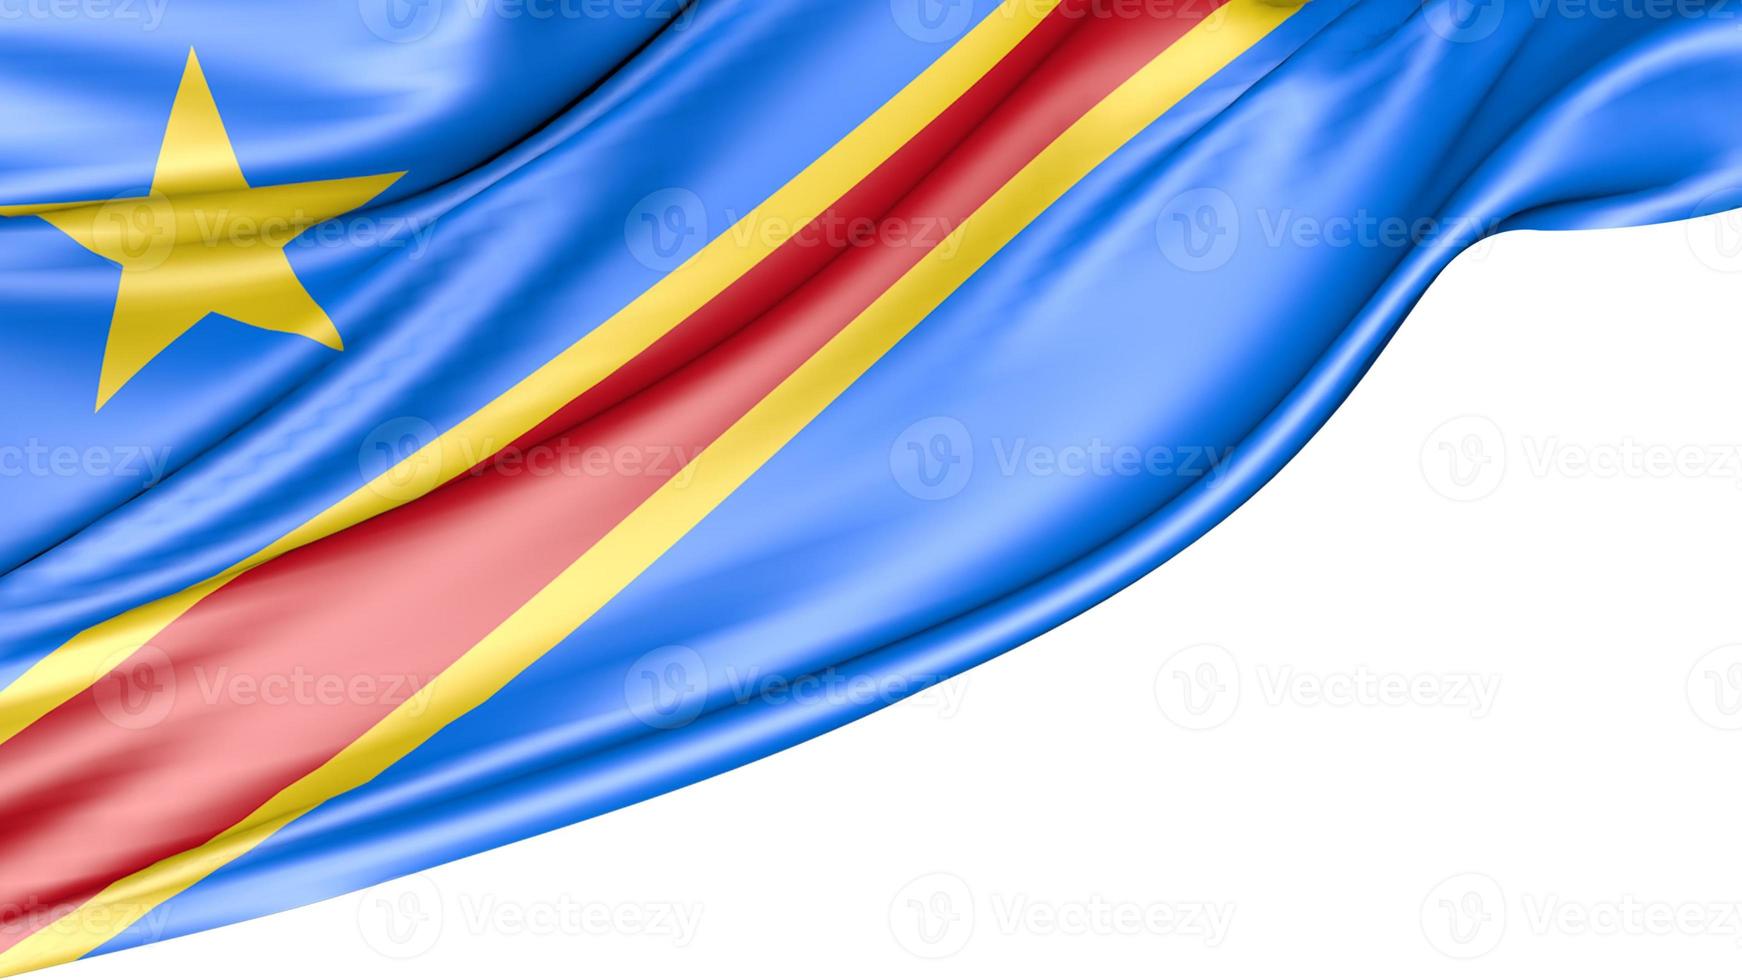 Congo Democratic Republic Flag Isolated on White Background, 3D Illustration photo